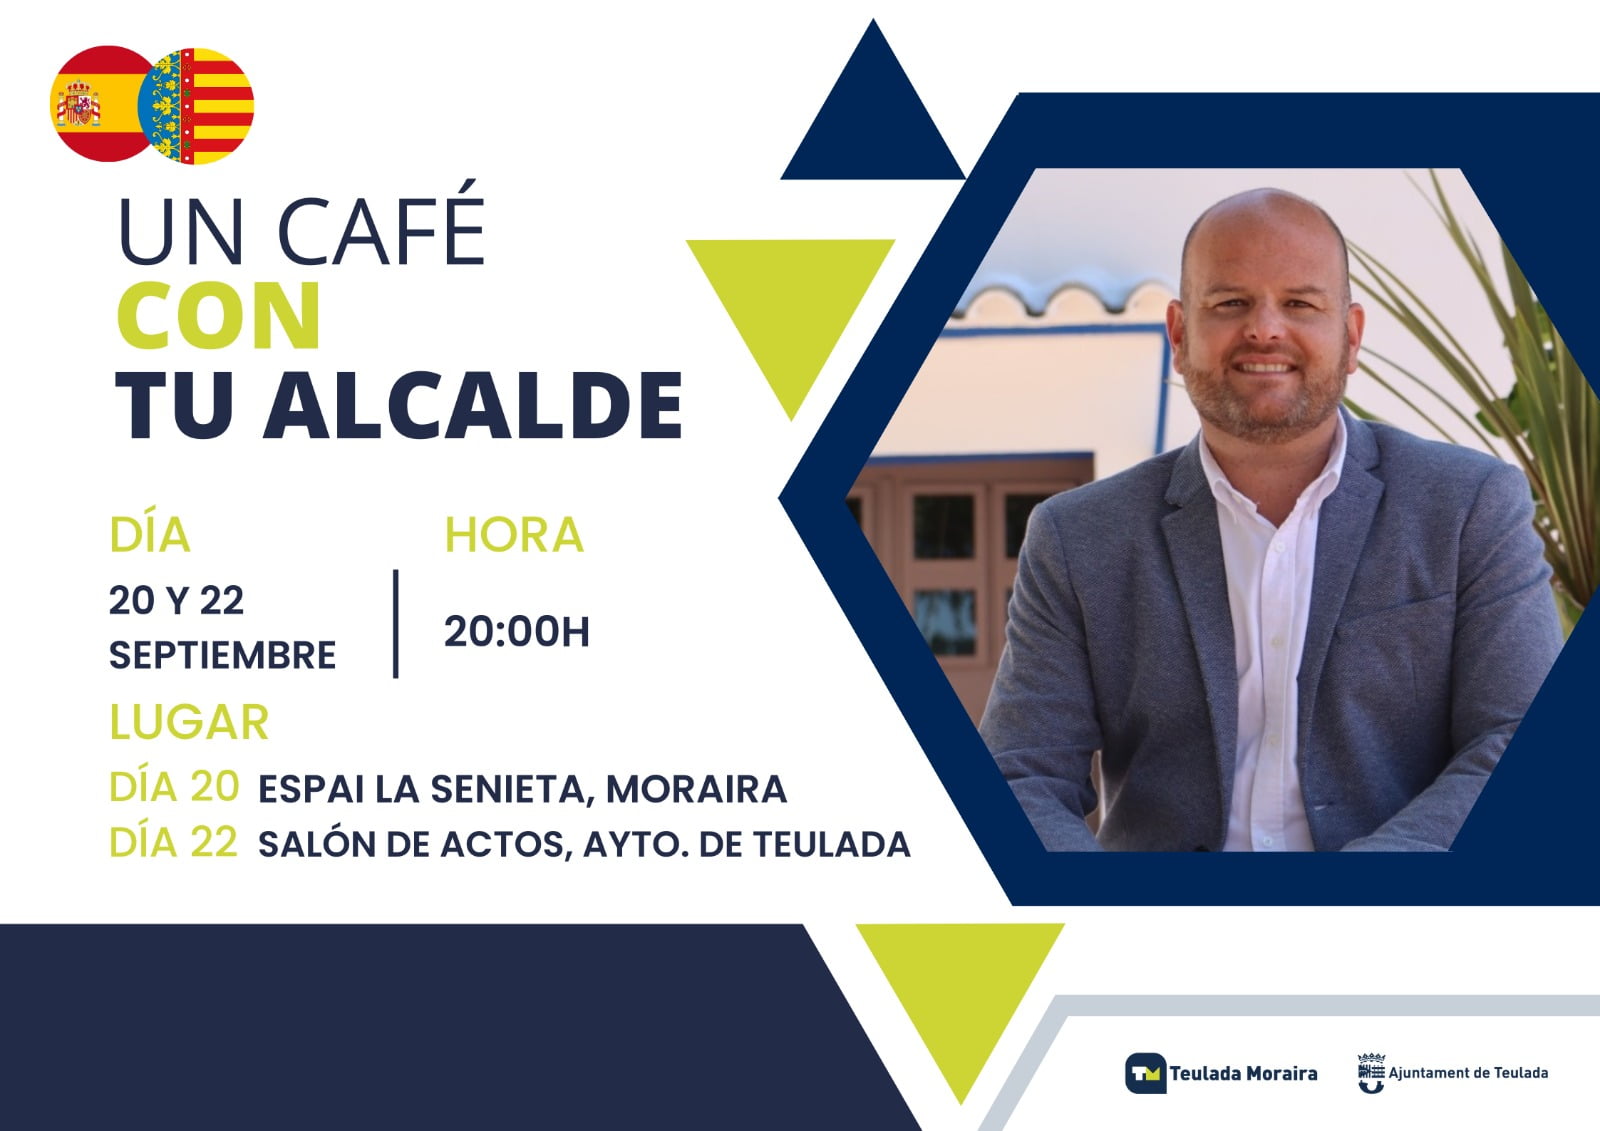 ‘Un café con tu alcalde’ en Teulada Moraira